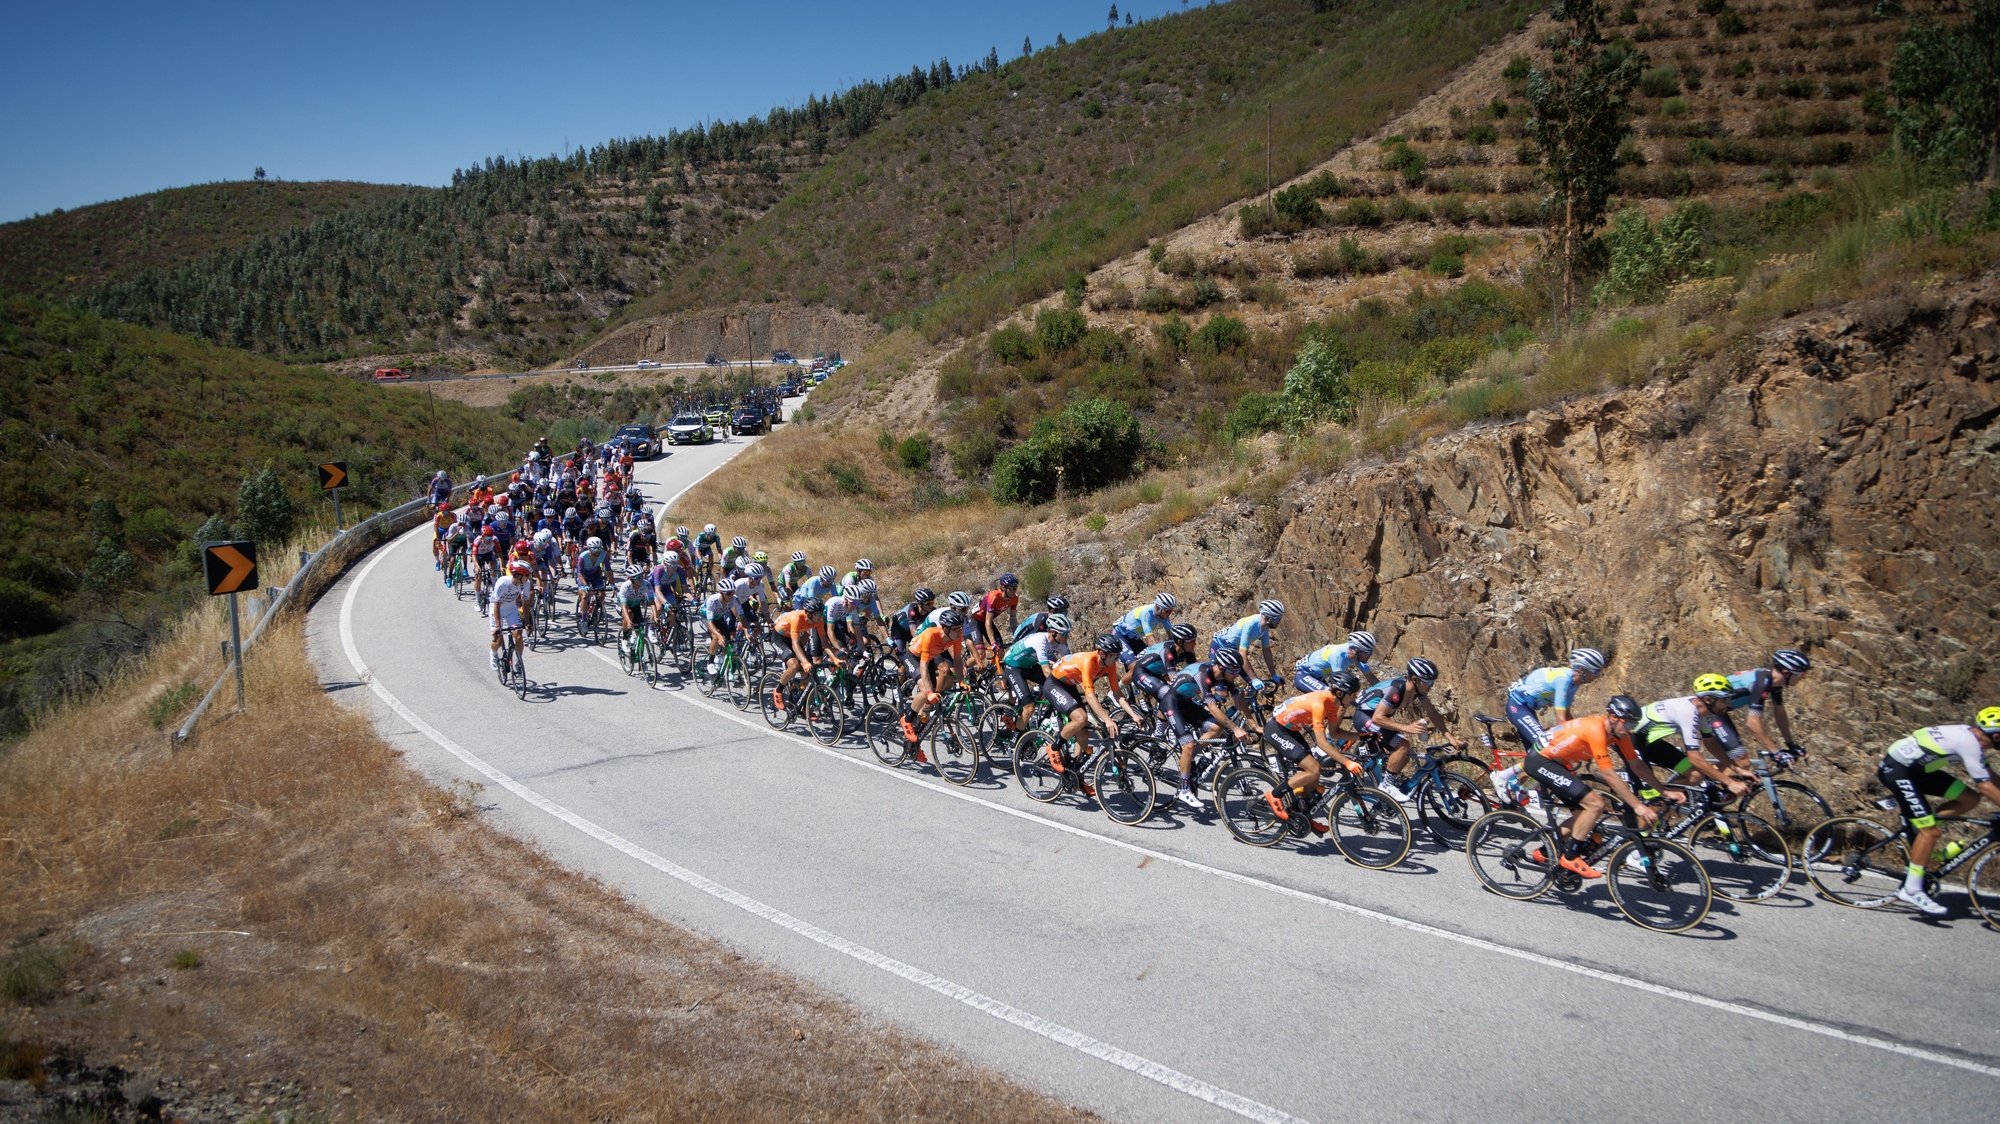 Fase da 3ª etapa da 83ª Volta a Portugal em Bicicleta, que decorreu hoje entre Sertã e a Torre (Covilhã) na Serra da Estrela, com 159 Km de extensão, Covilhã, 7 de agosto de 2022. PEDRO SARMENTO COSTA/LUSA